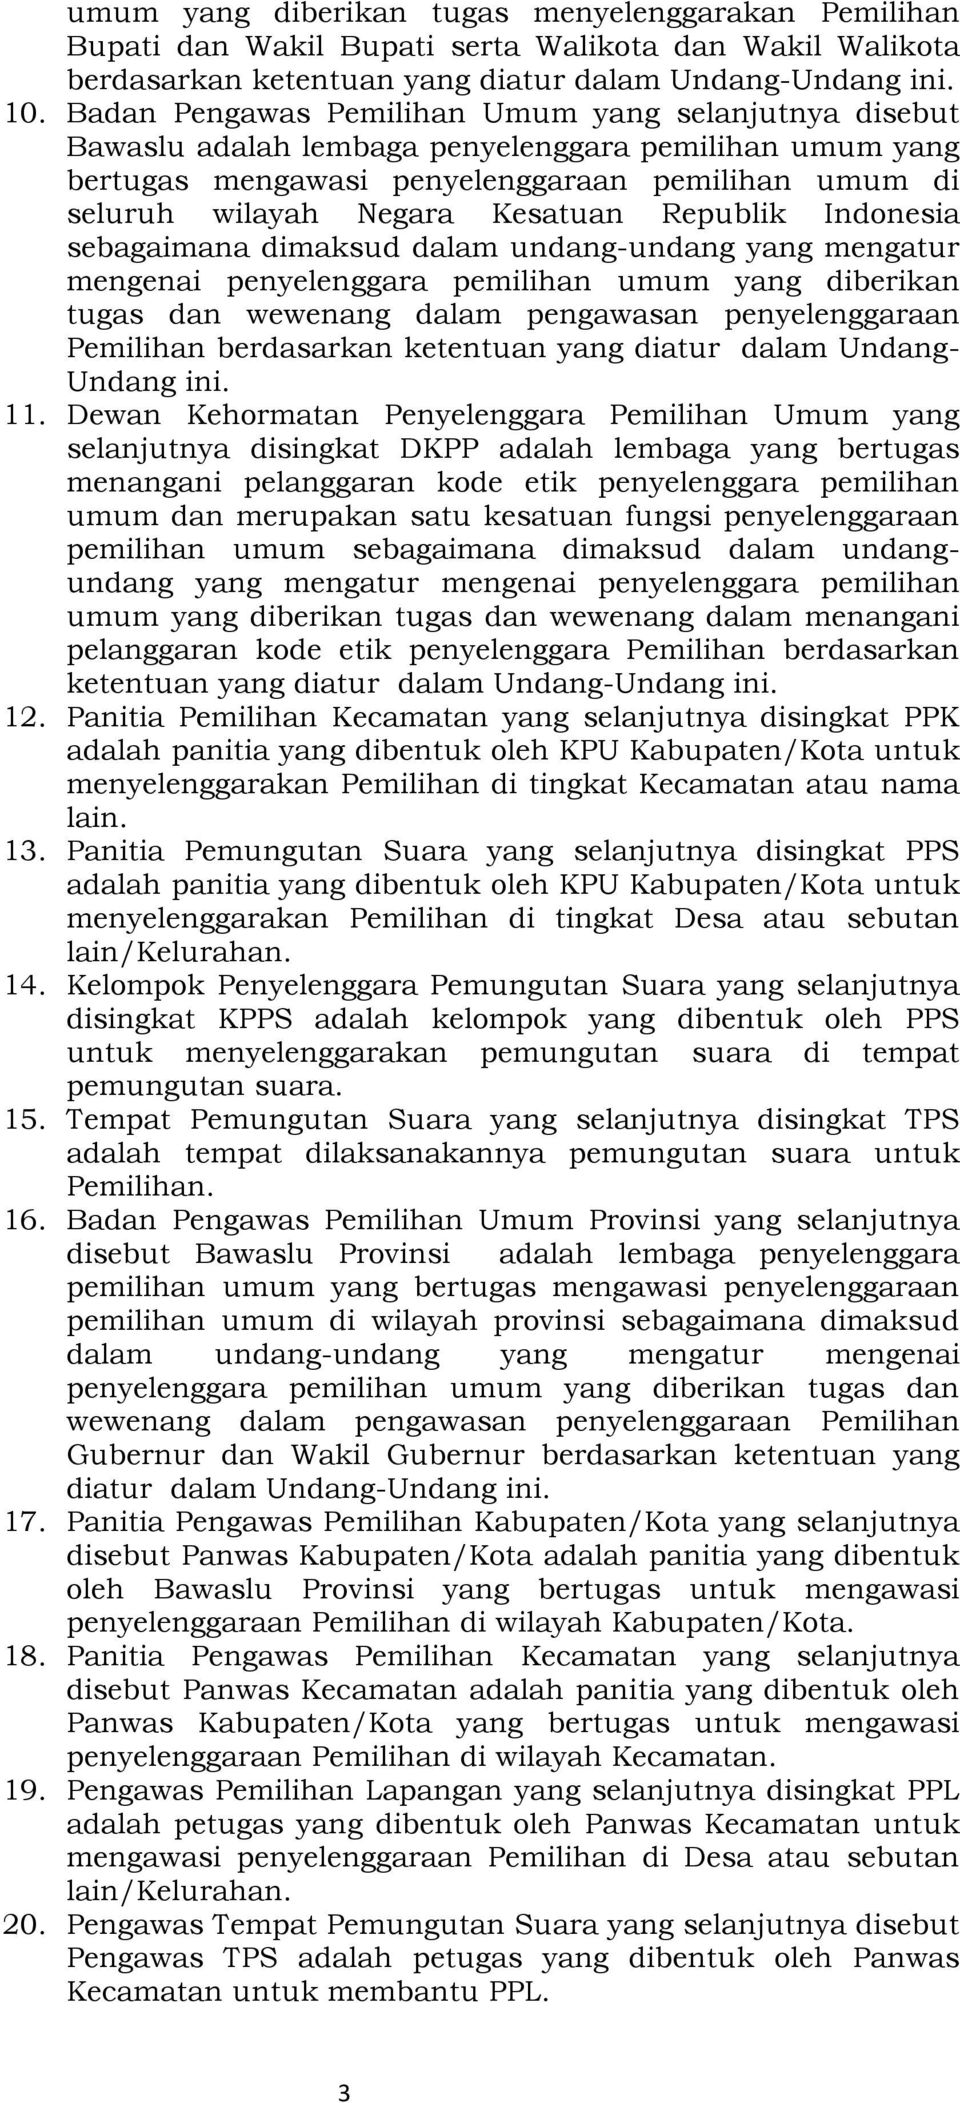 Republik Indonesia sebagaimana dimaksud dalam undang-undang yang mengatur mengenai penyelenggara pemilihan umum yang diberikan tugas dan wewenang dalam pengawasan penyelenggaraan Pemilihan